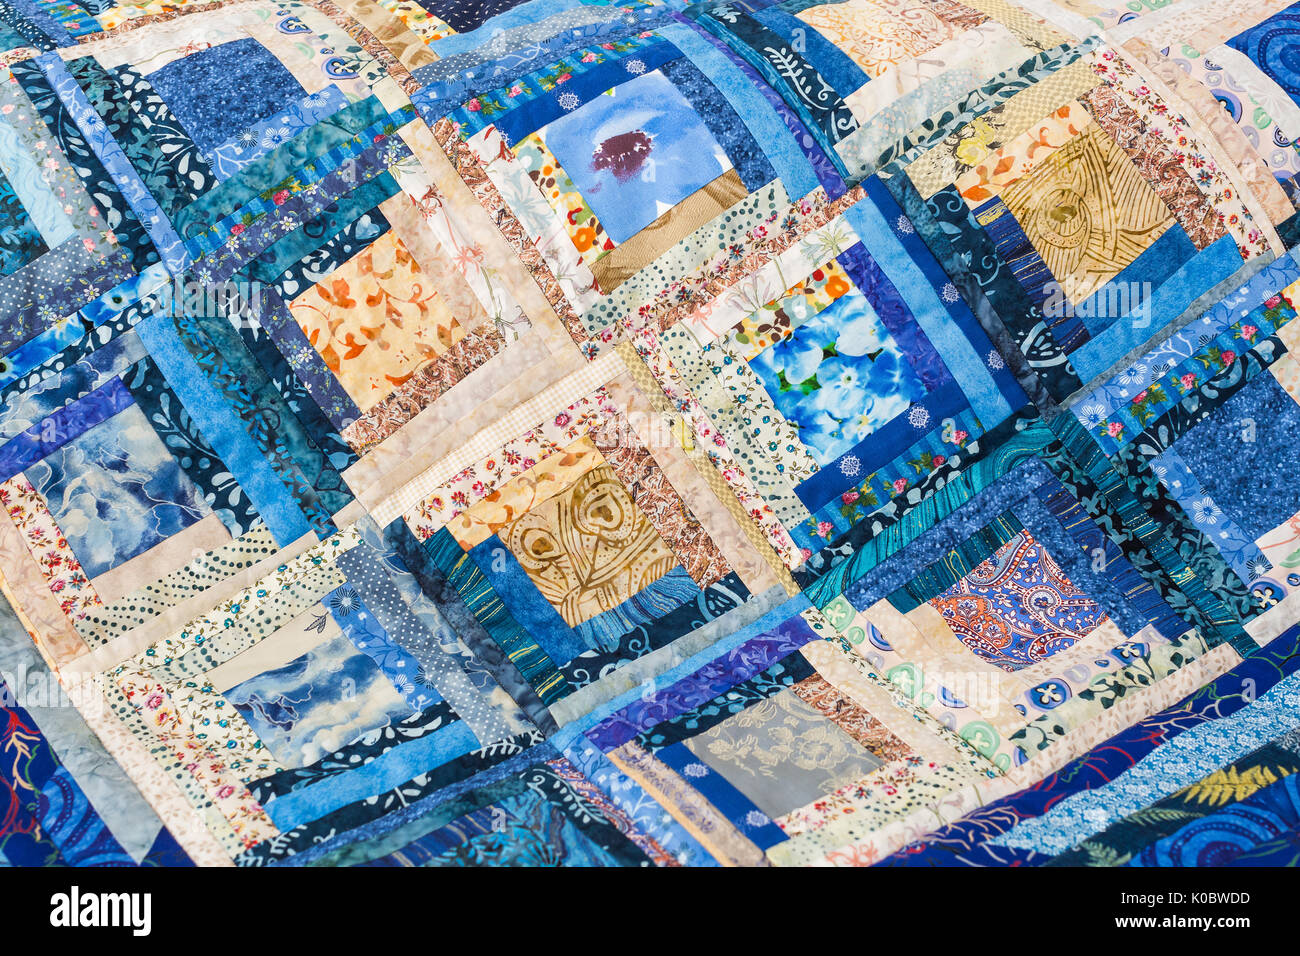 Patchwork, couture, fait main, de l'intérieur, accueil confort concept - verre transparent coloré dans des tons bleu patchwork faite de fragments ornés de motifs imprimés fleuris cousus en forme de carrés Banque D'Images